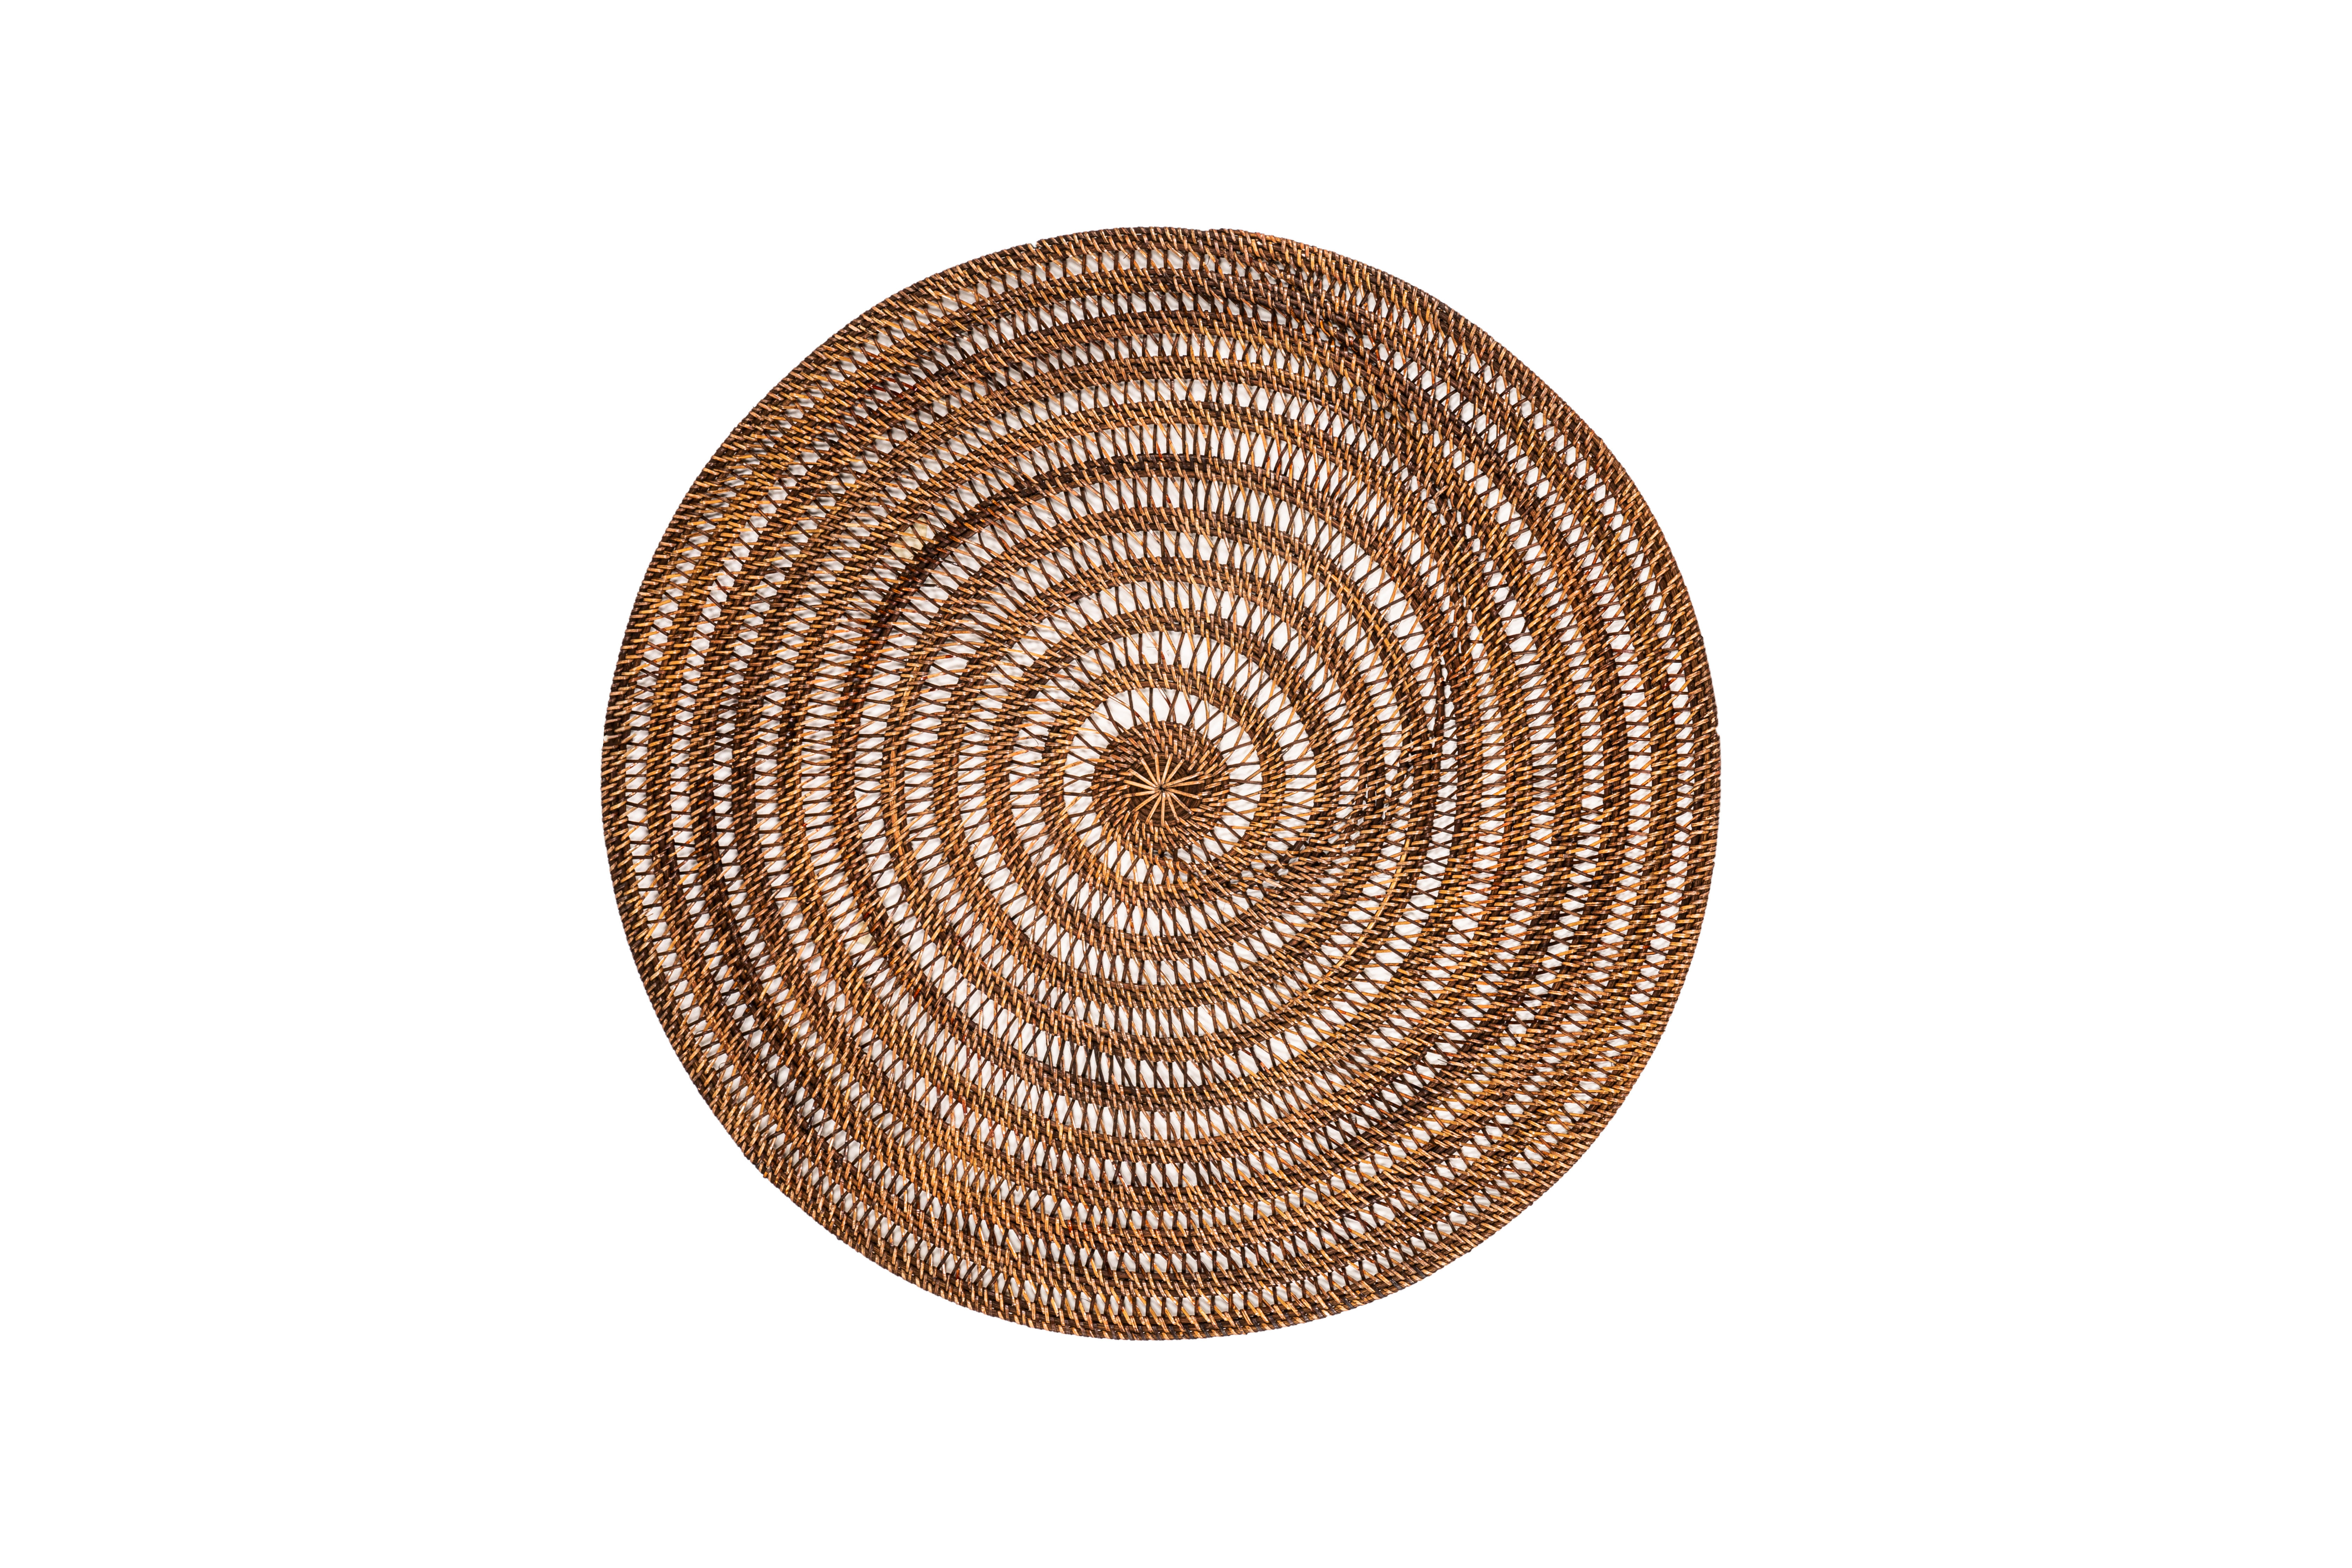 Décoration rattan, rond - dia 80 cm - SPIRAL, brun foncé 